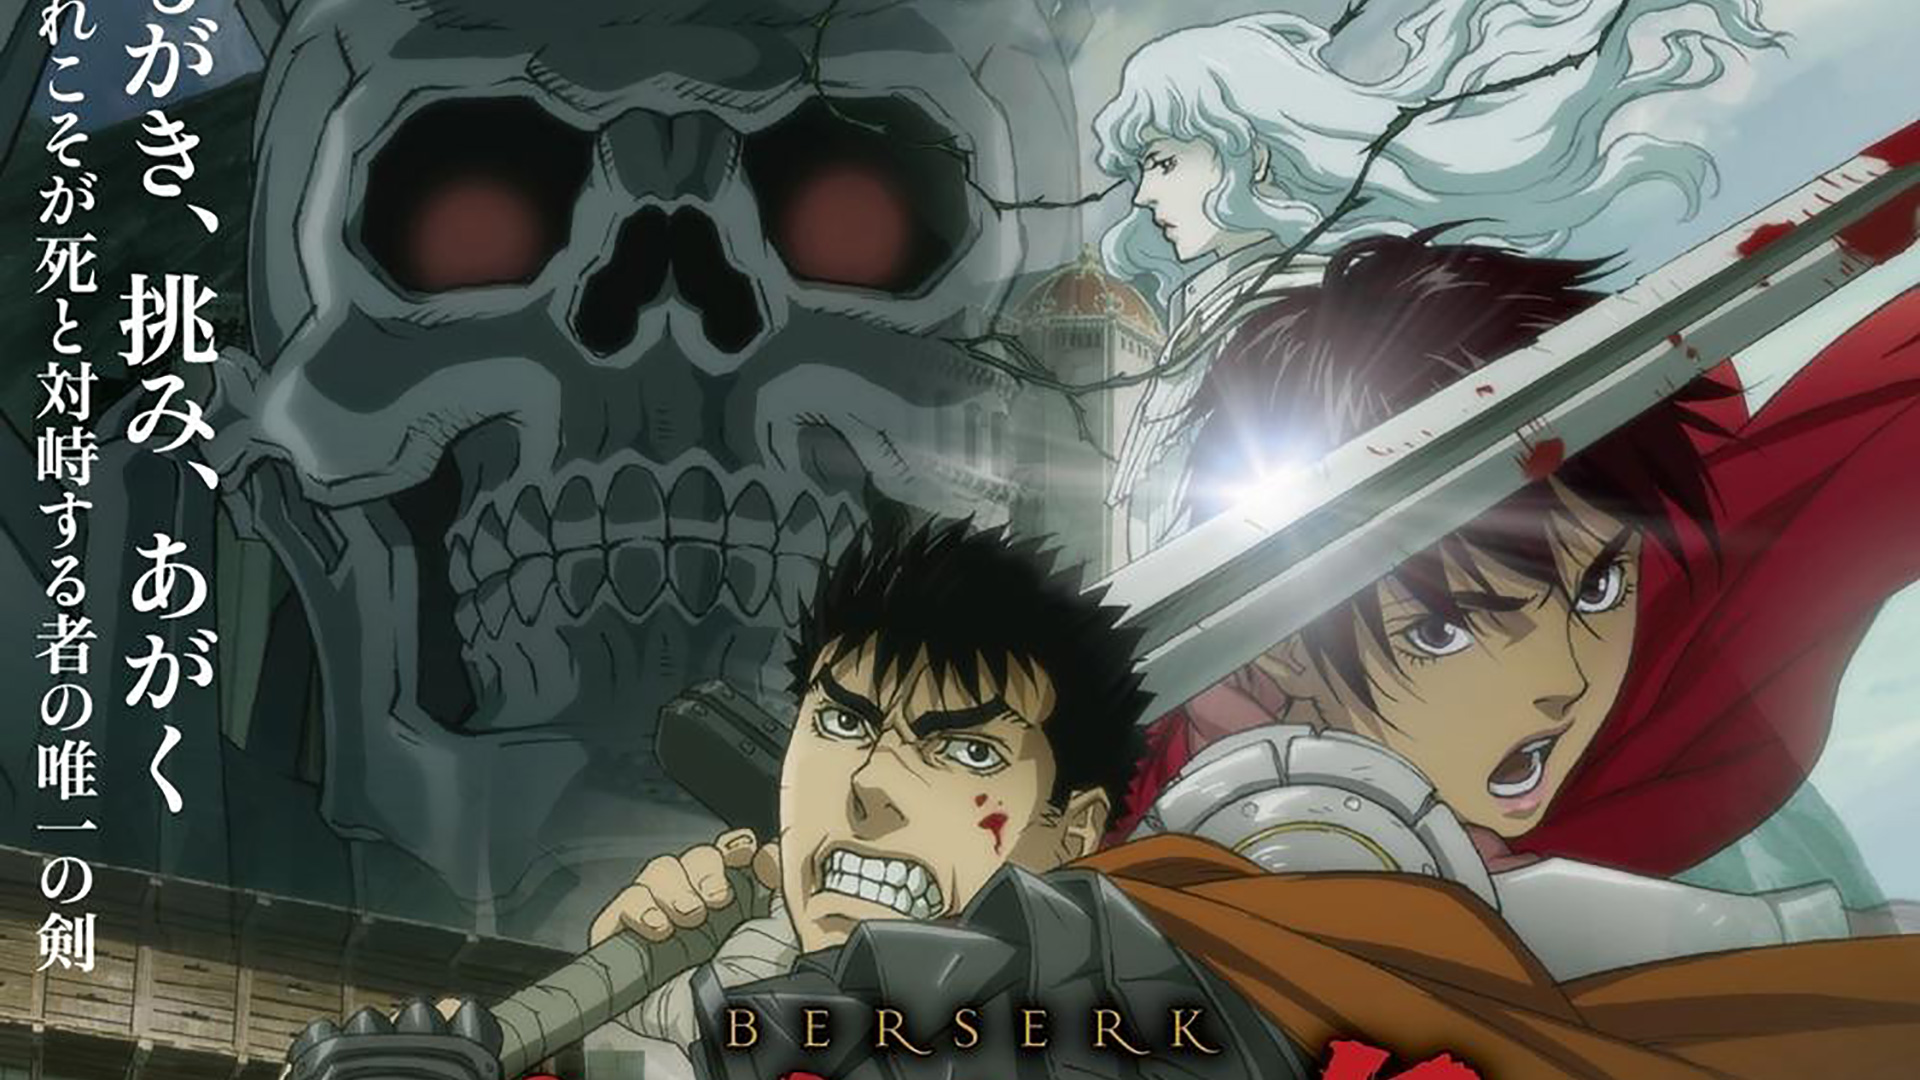 Novo trailer da versão série dos filmes anime Berserk: The Golden Age Arc